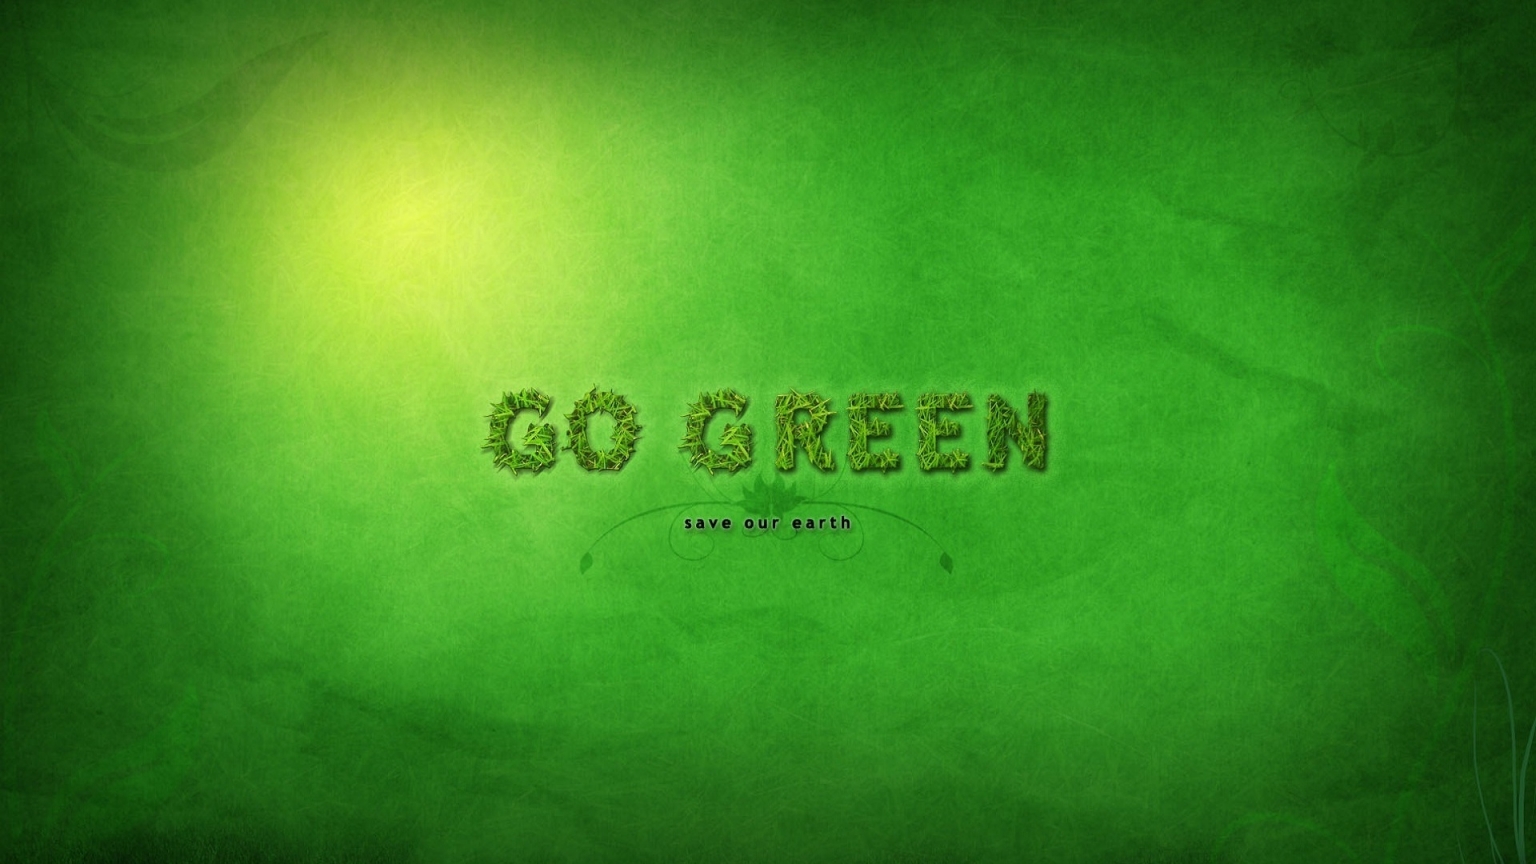 Go Green for 1536 x 864 HDTV resolution